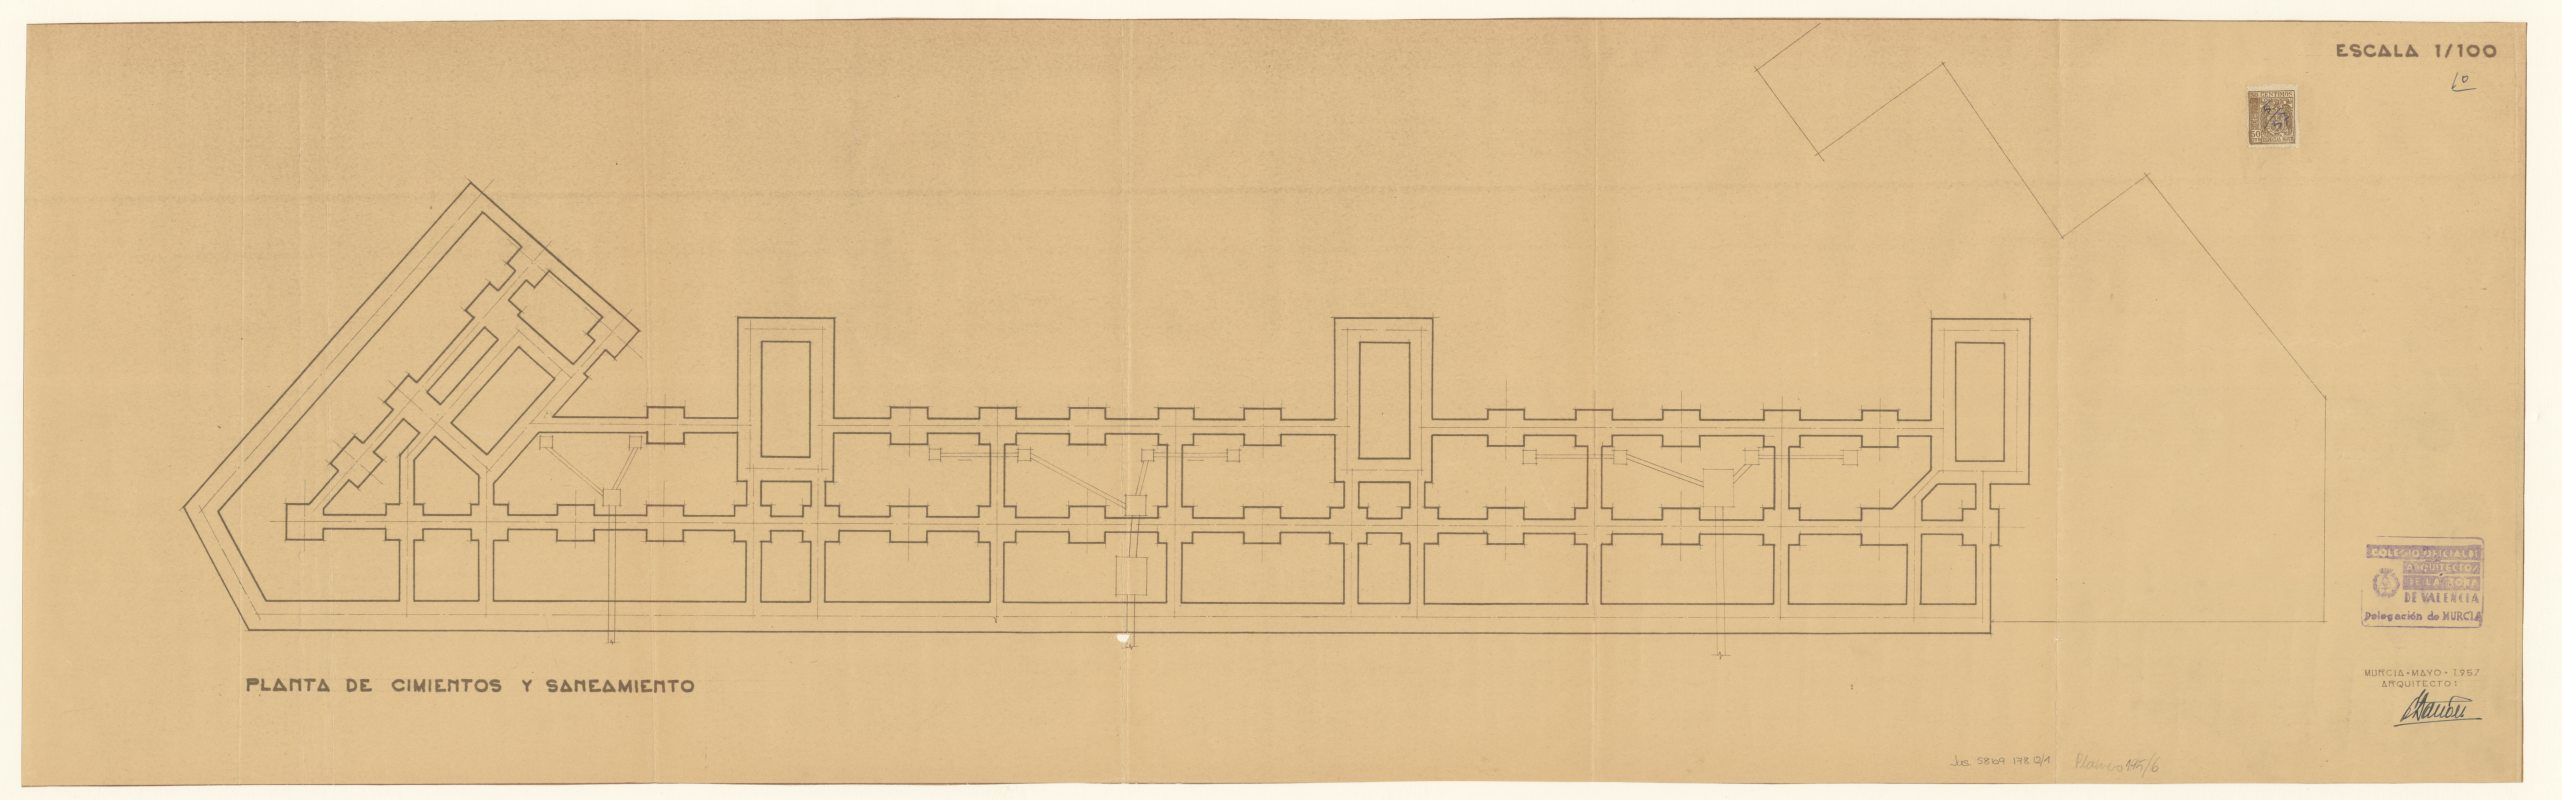 Plano de planta de cimientos y saneamiento de edificio de viviendas de Gran Vía en Caravaca de la Cruz. Arquitecto Eugenio Bañón. Escala 1:100. Año 1957.